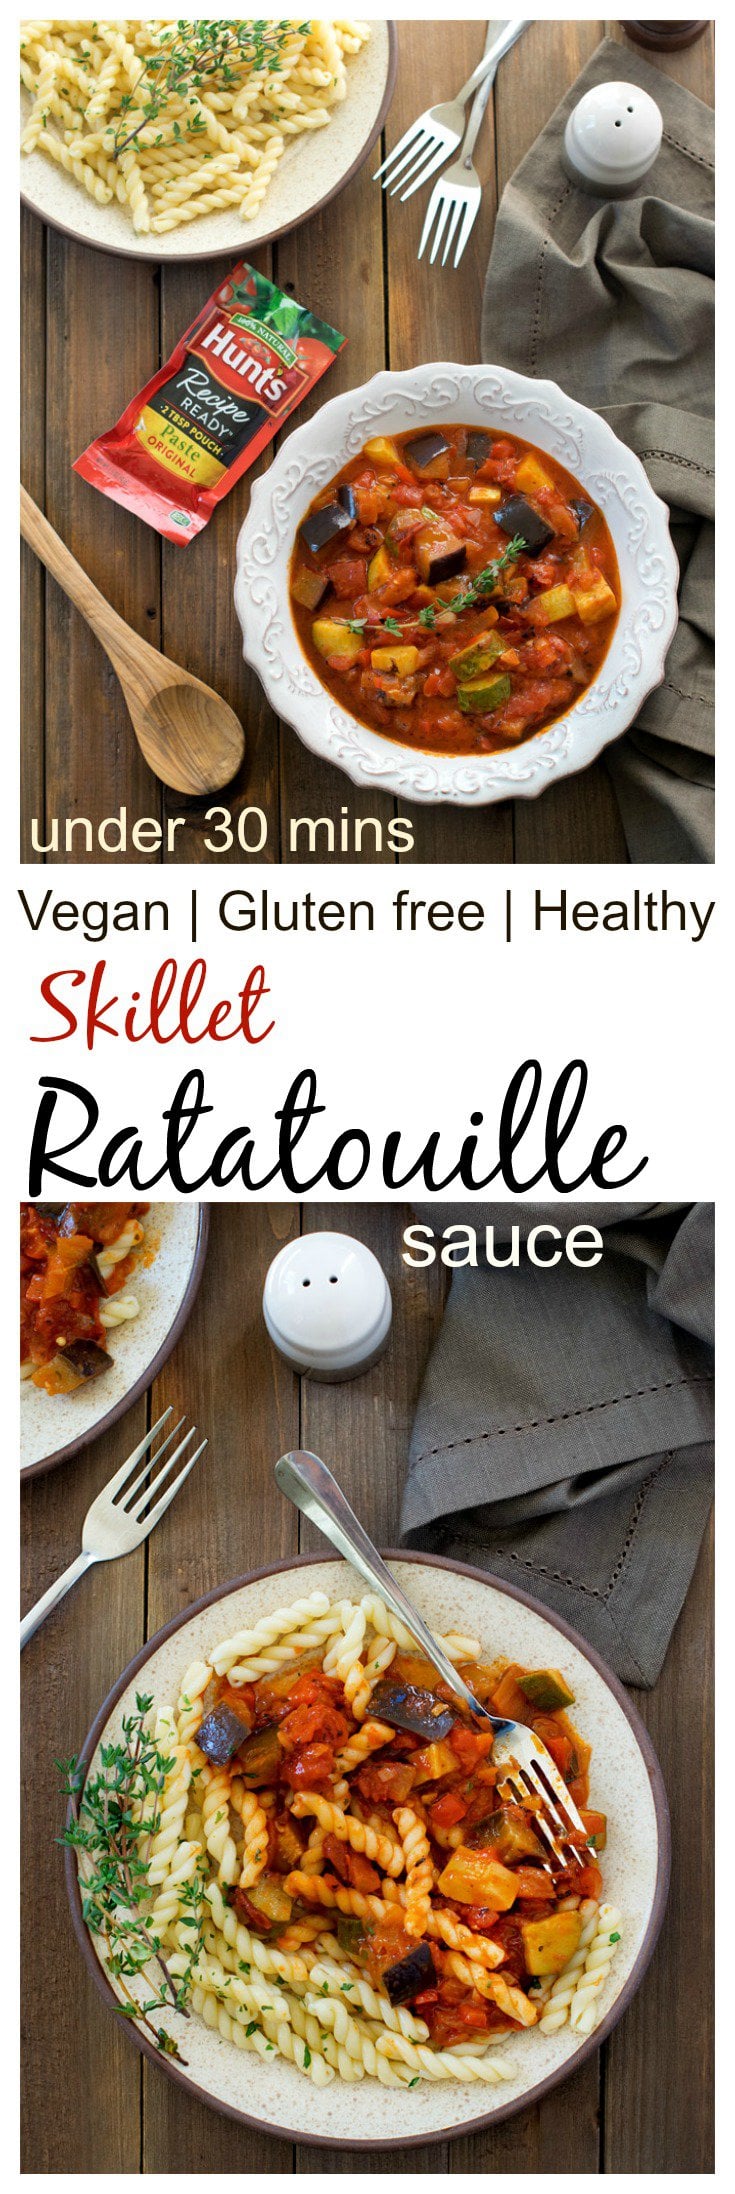 skillet-ratatouille-sauce-vegan-glutenfree